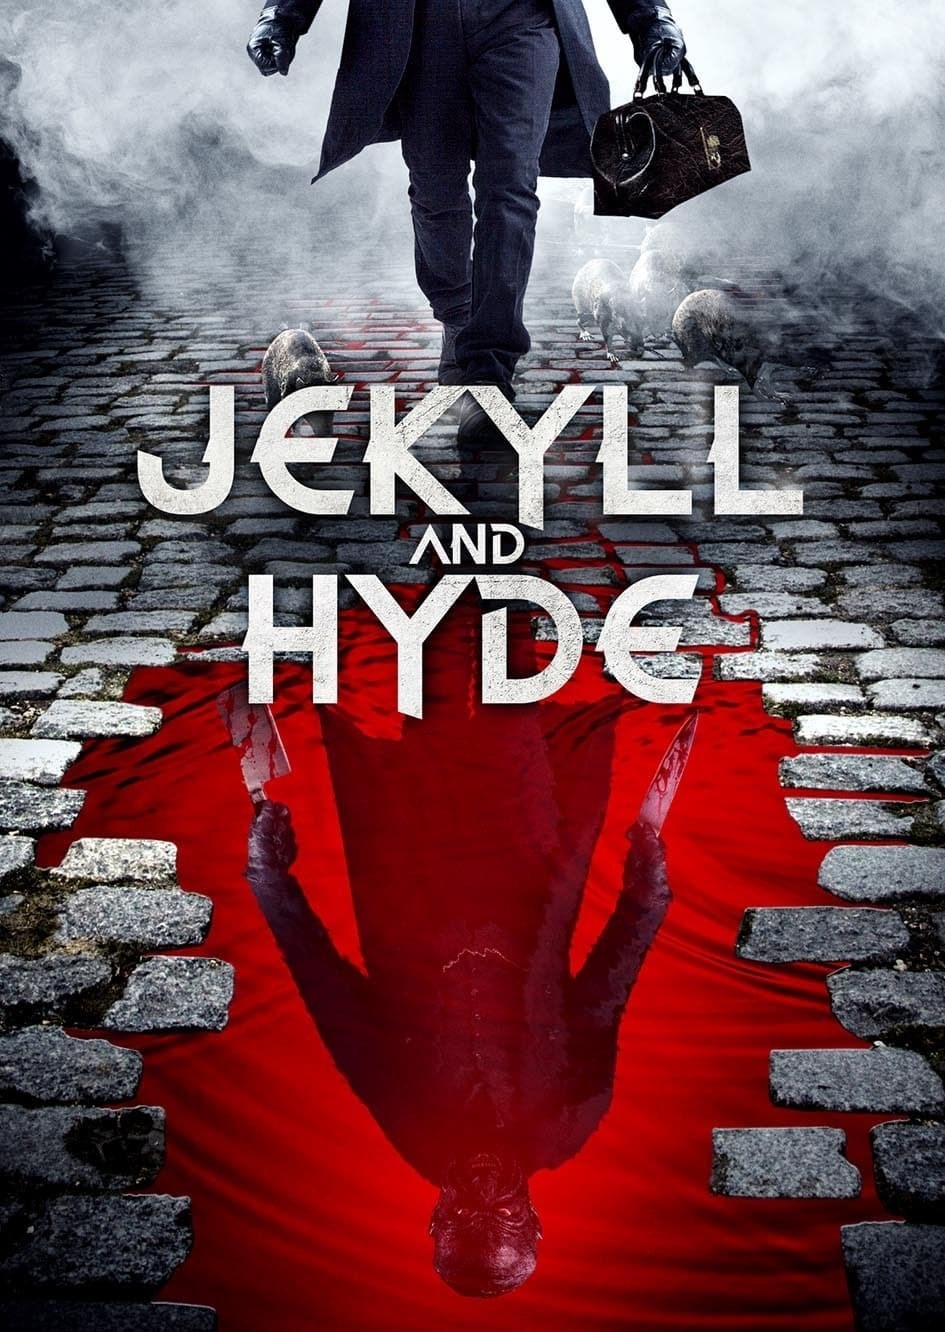 Jekyll dan hyde 2021